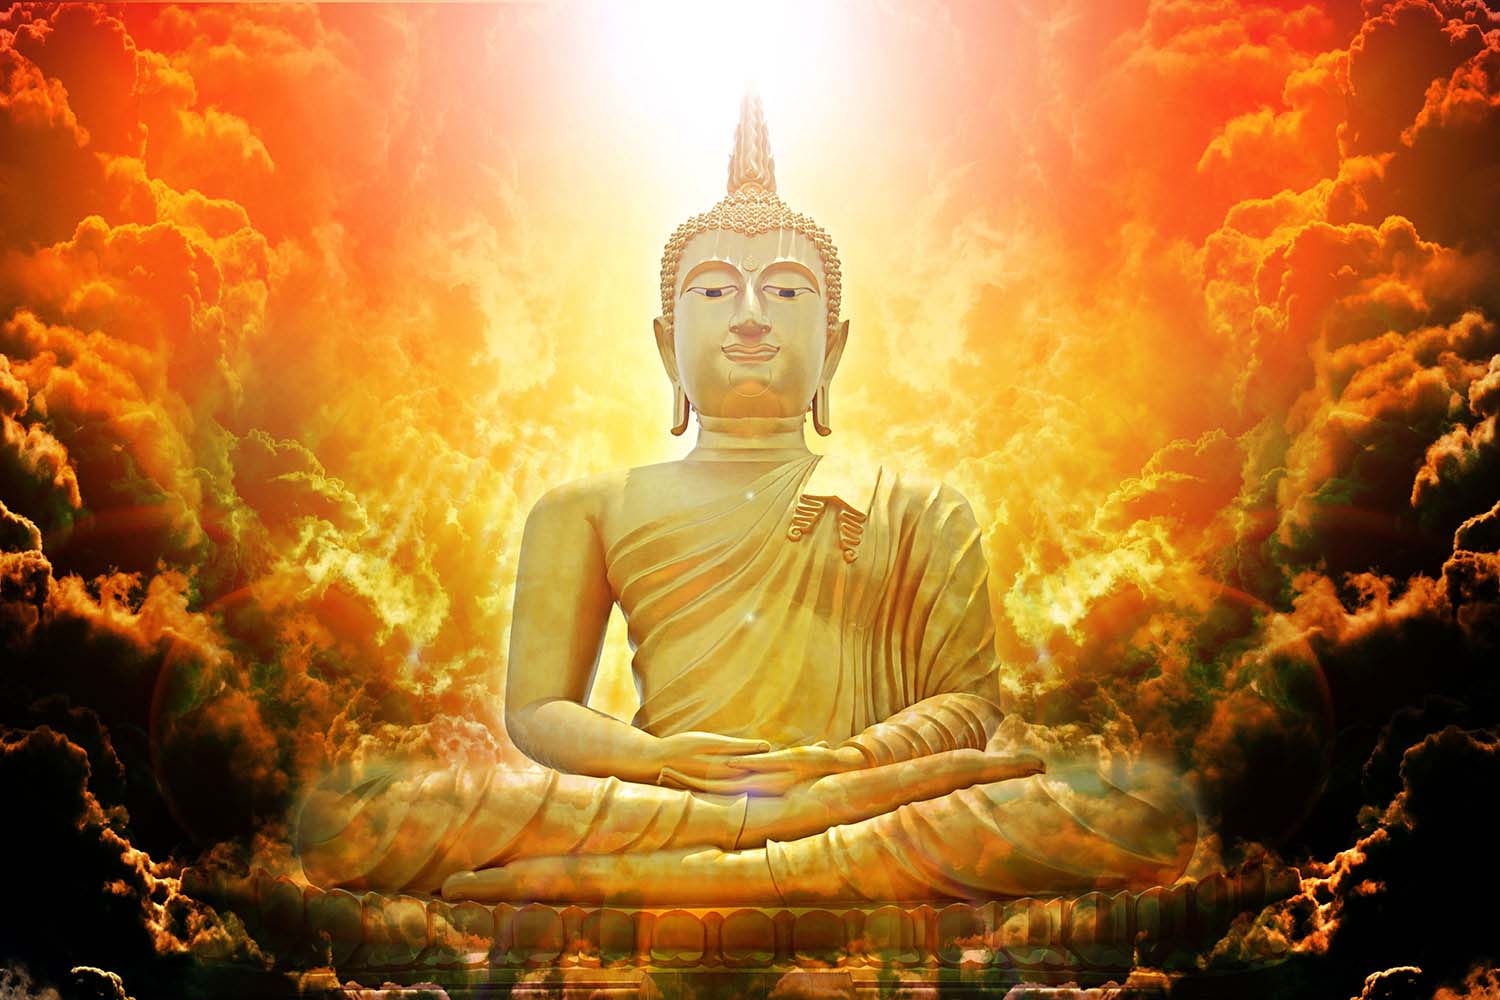 Hãy chiêm ngưỡng vẻ đẹp tuyệt vời của Phật 3D trong hình ảnh! Bạn sẽ có cơ hội để nhìn ngắm những chi tiết tinh xảo và chân thực nhất trong những bức ảnh này.